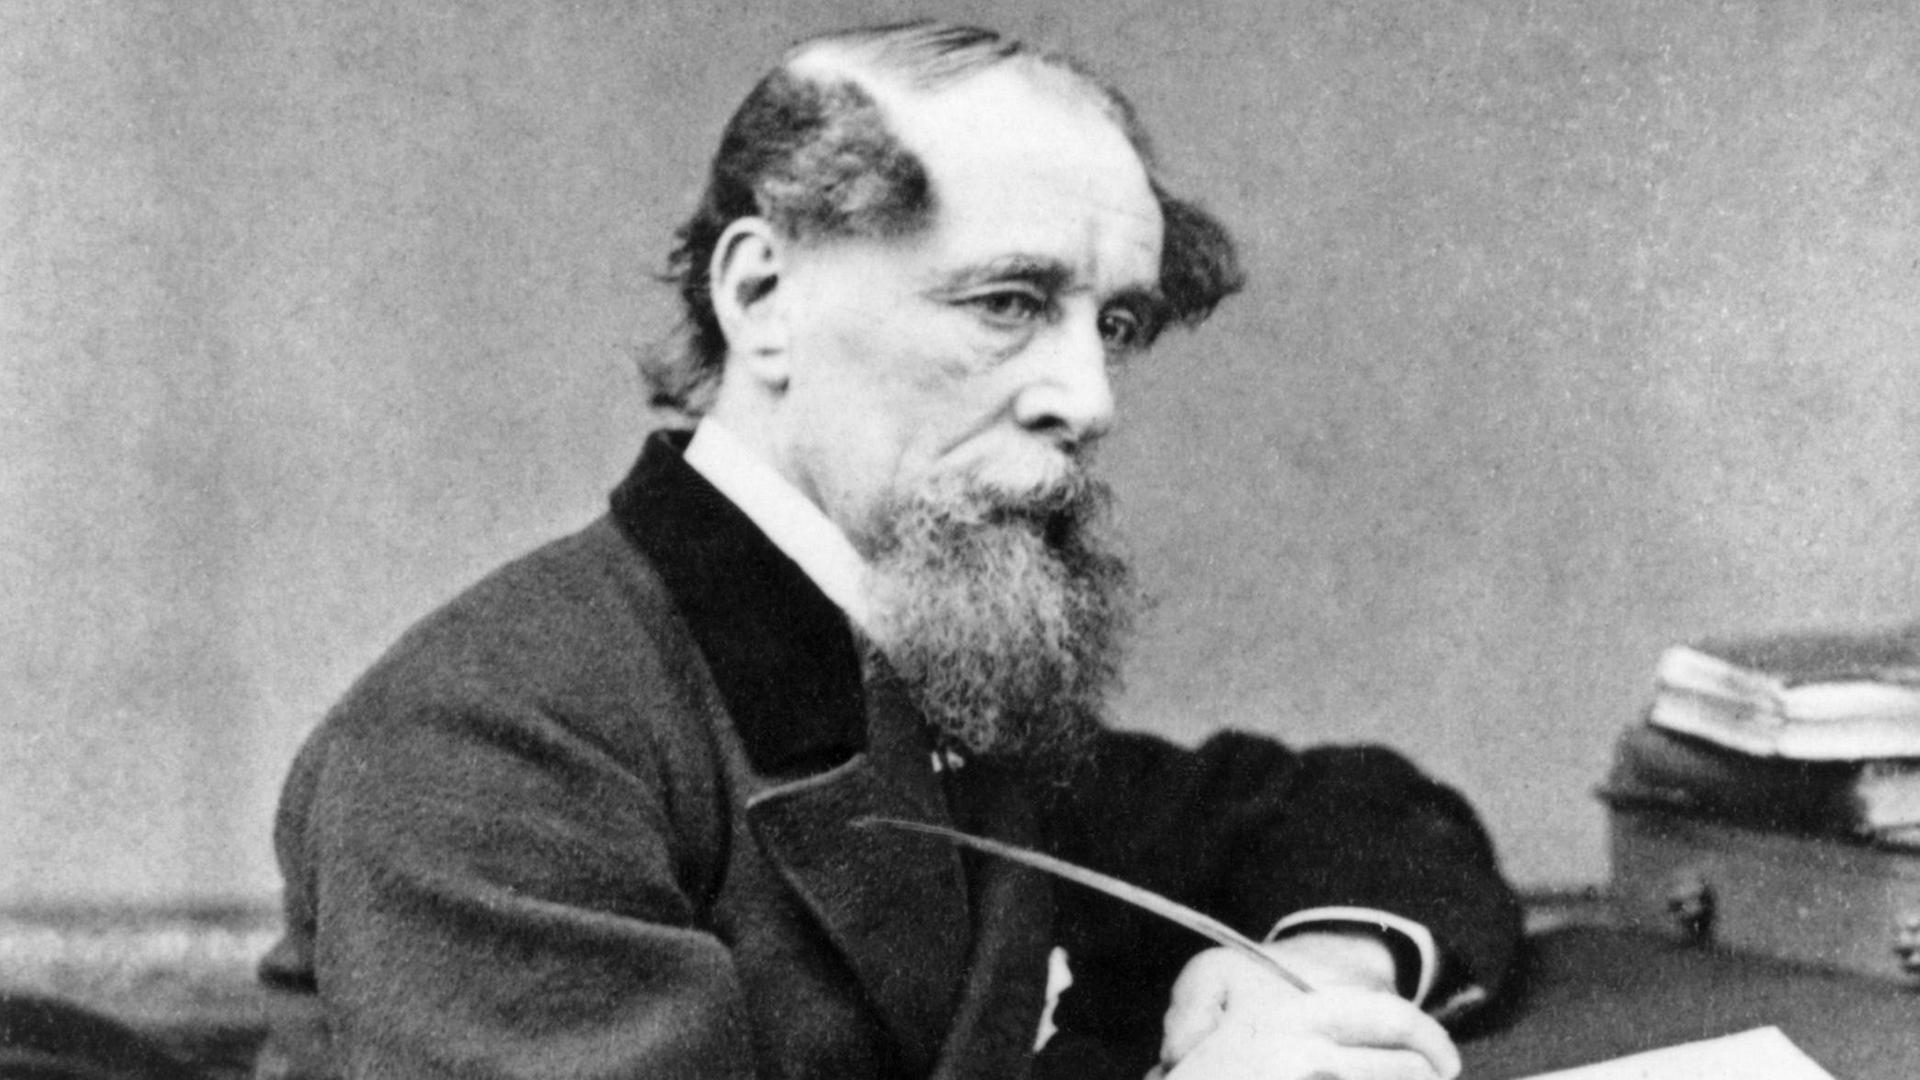 Schwarzweißporträt von Charles Dickens in nachdenklicher Pose am Schreibtisch